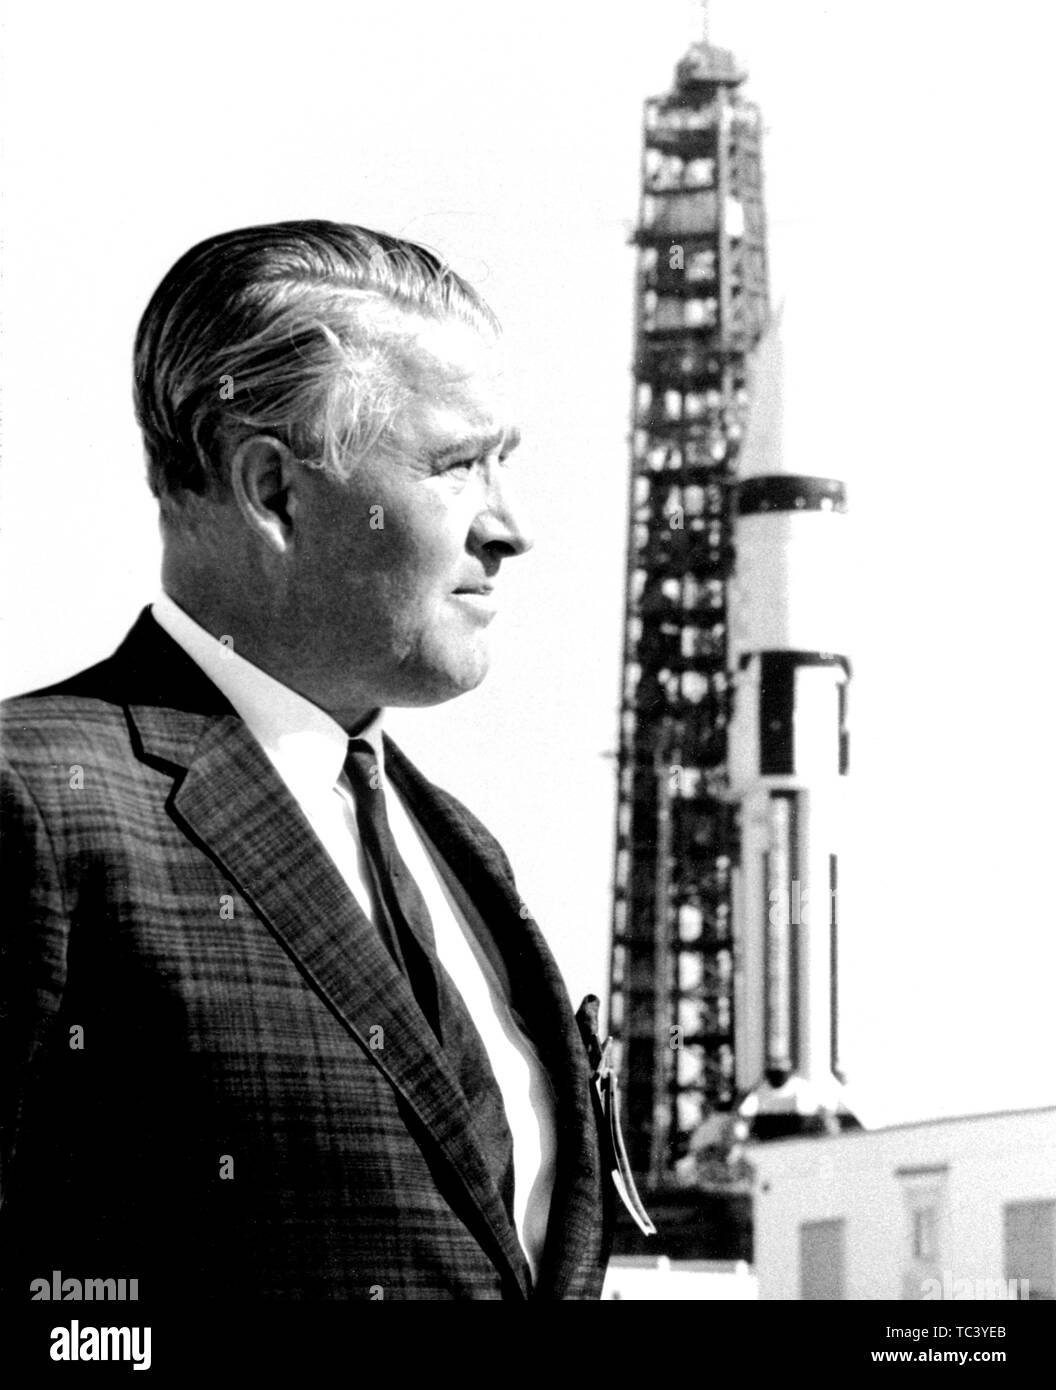 Le Dr Wernher von Braun se place en avant d'un véhicule de lancement Saturn IB à John F Kennedy Space Center, Merritt Island, Florida, 1968. Droit avec la permission de la National Aeronautics and Space Administration (NASA). () Banque D'Images